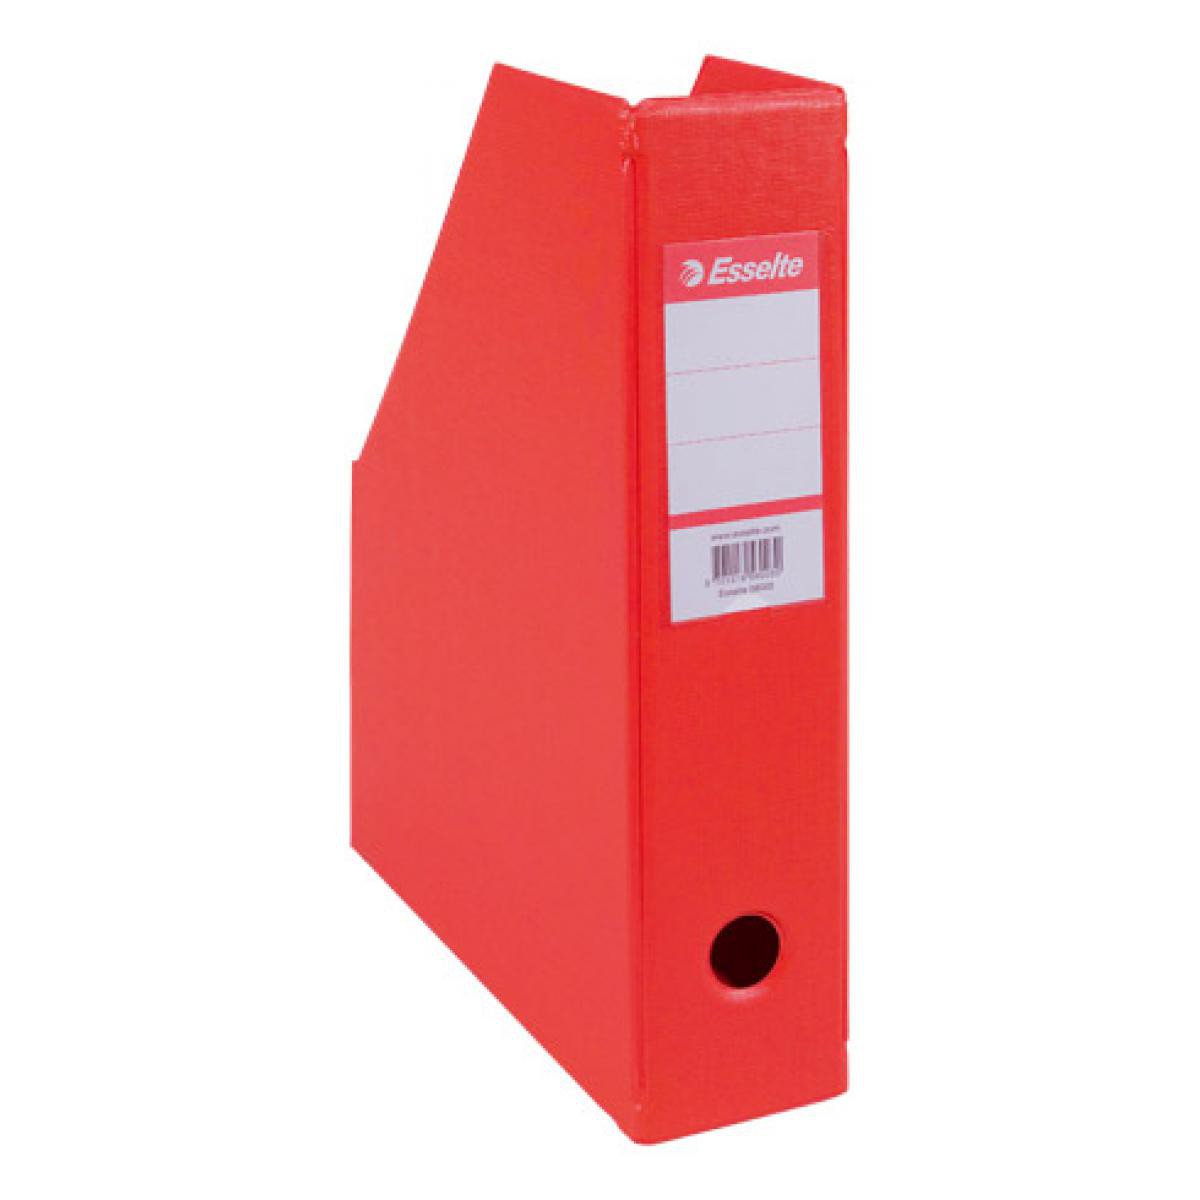 Esselte - Classic-box Esselte dos 7 cm - rouge - Lot de 10 - Accessoires Bureau